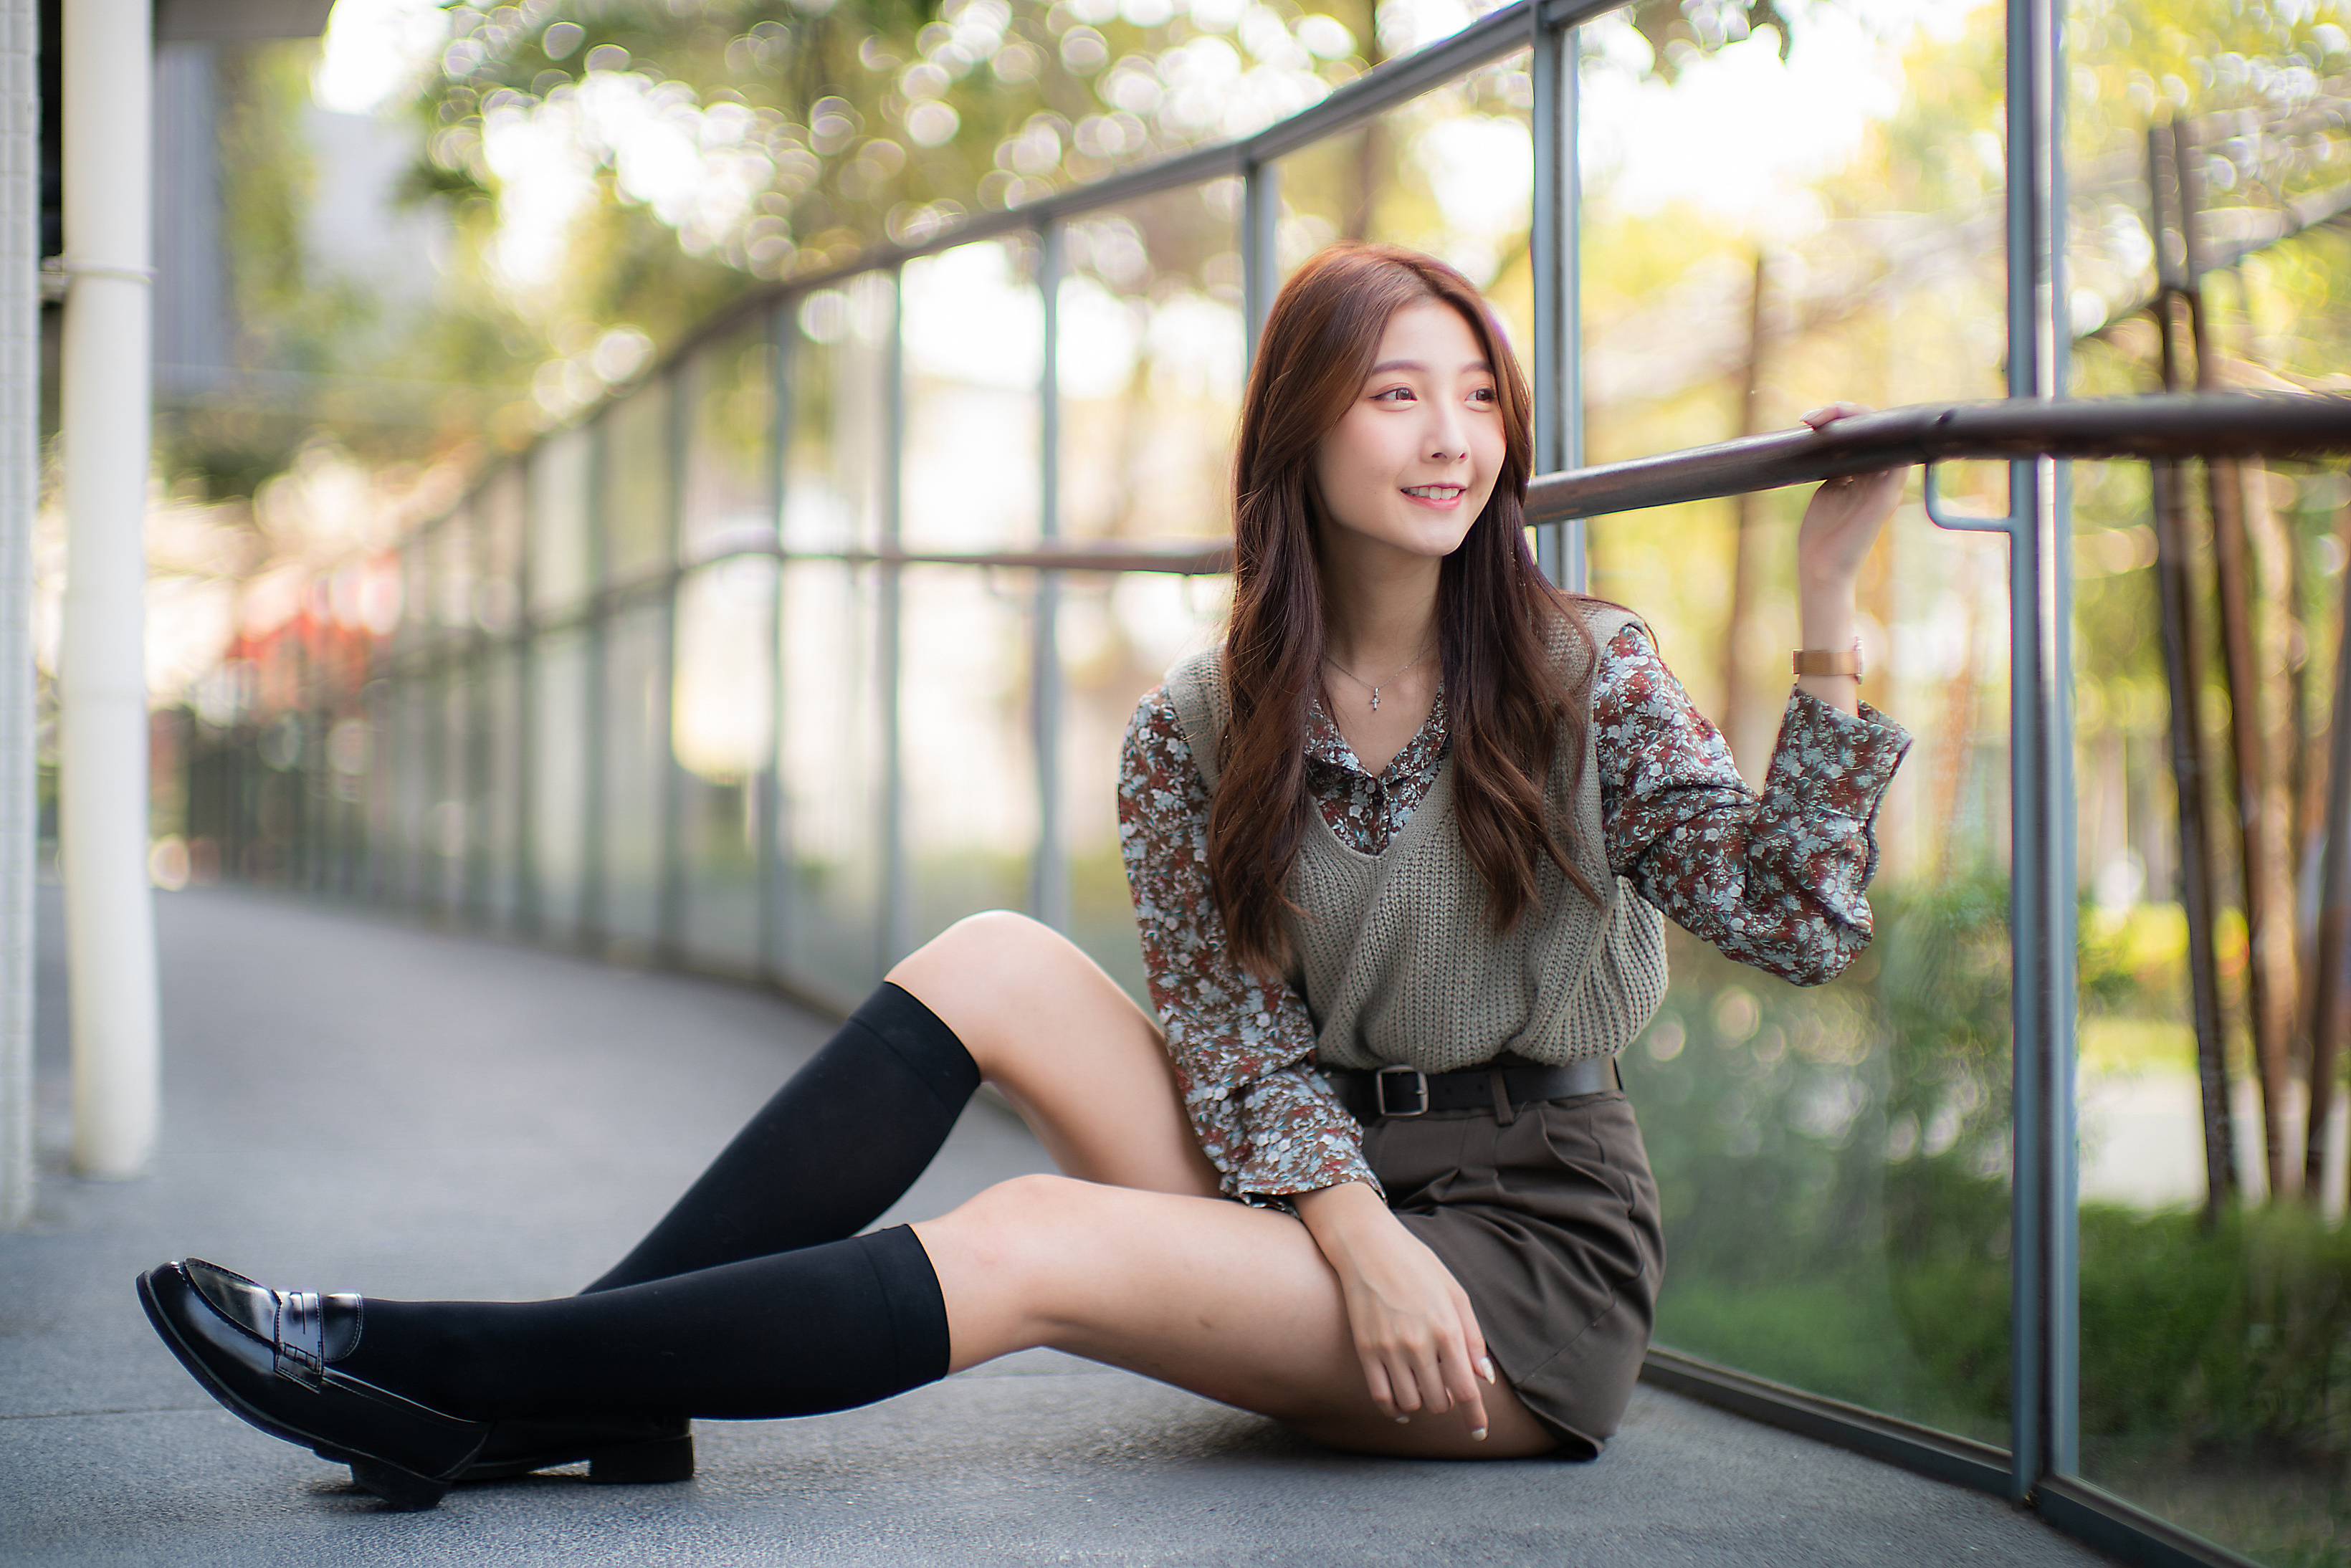 Asian Model Women Long Hair Dark Hair Sitting Fence Shorts Belt Blouse Pullover Knee High Socks Dept 3280x2188